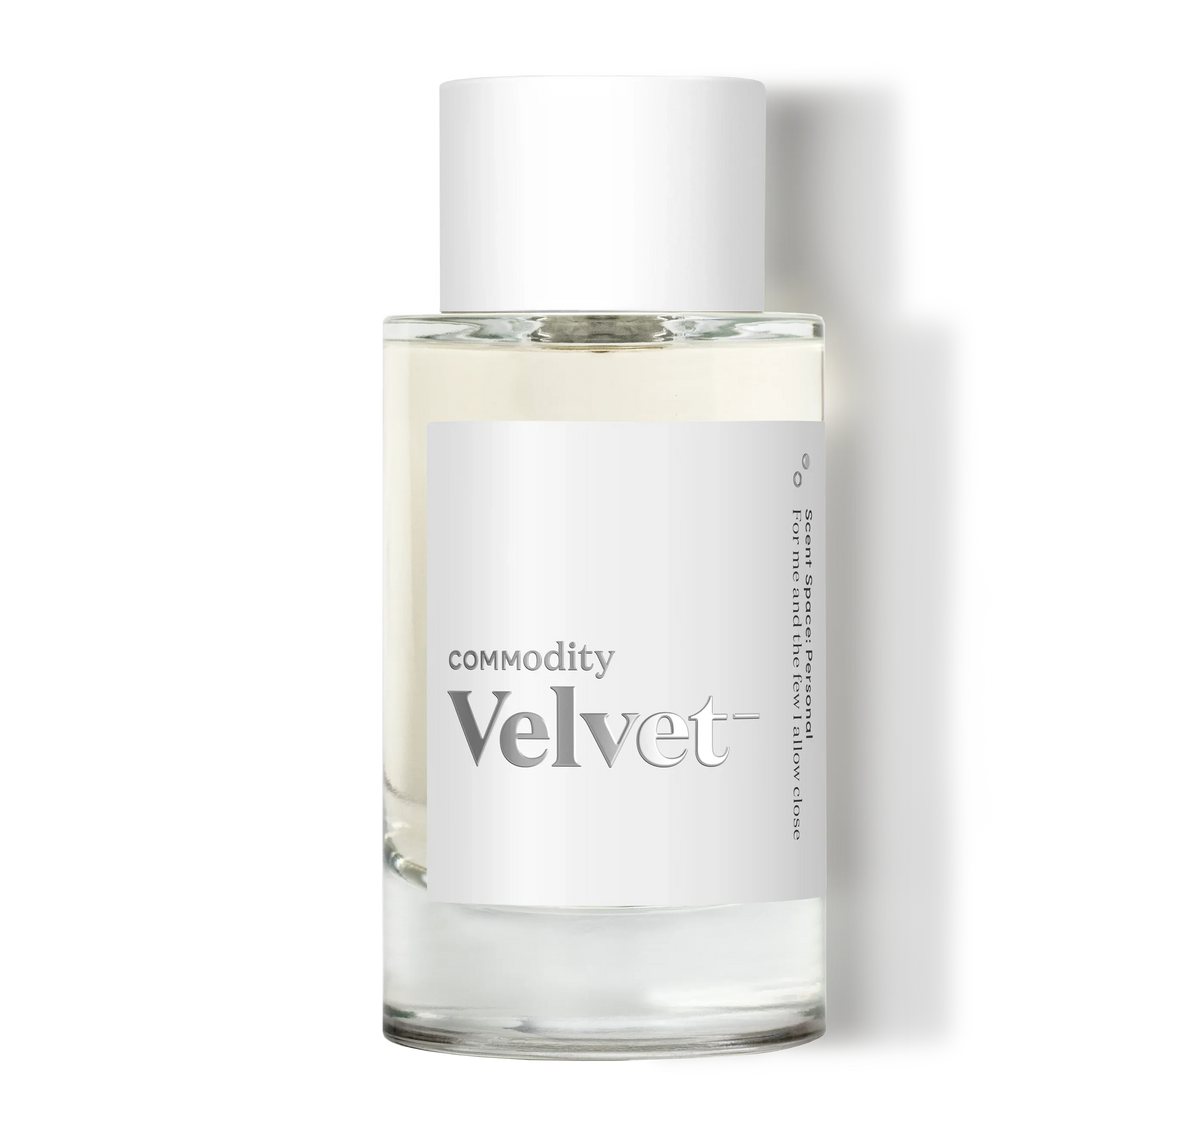 Commodity Velvet - Sample